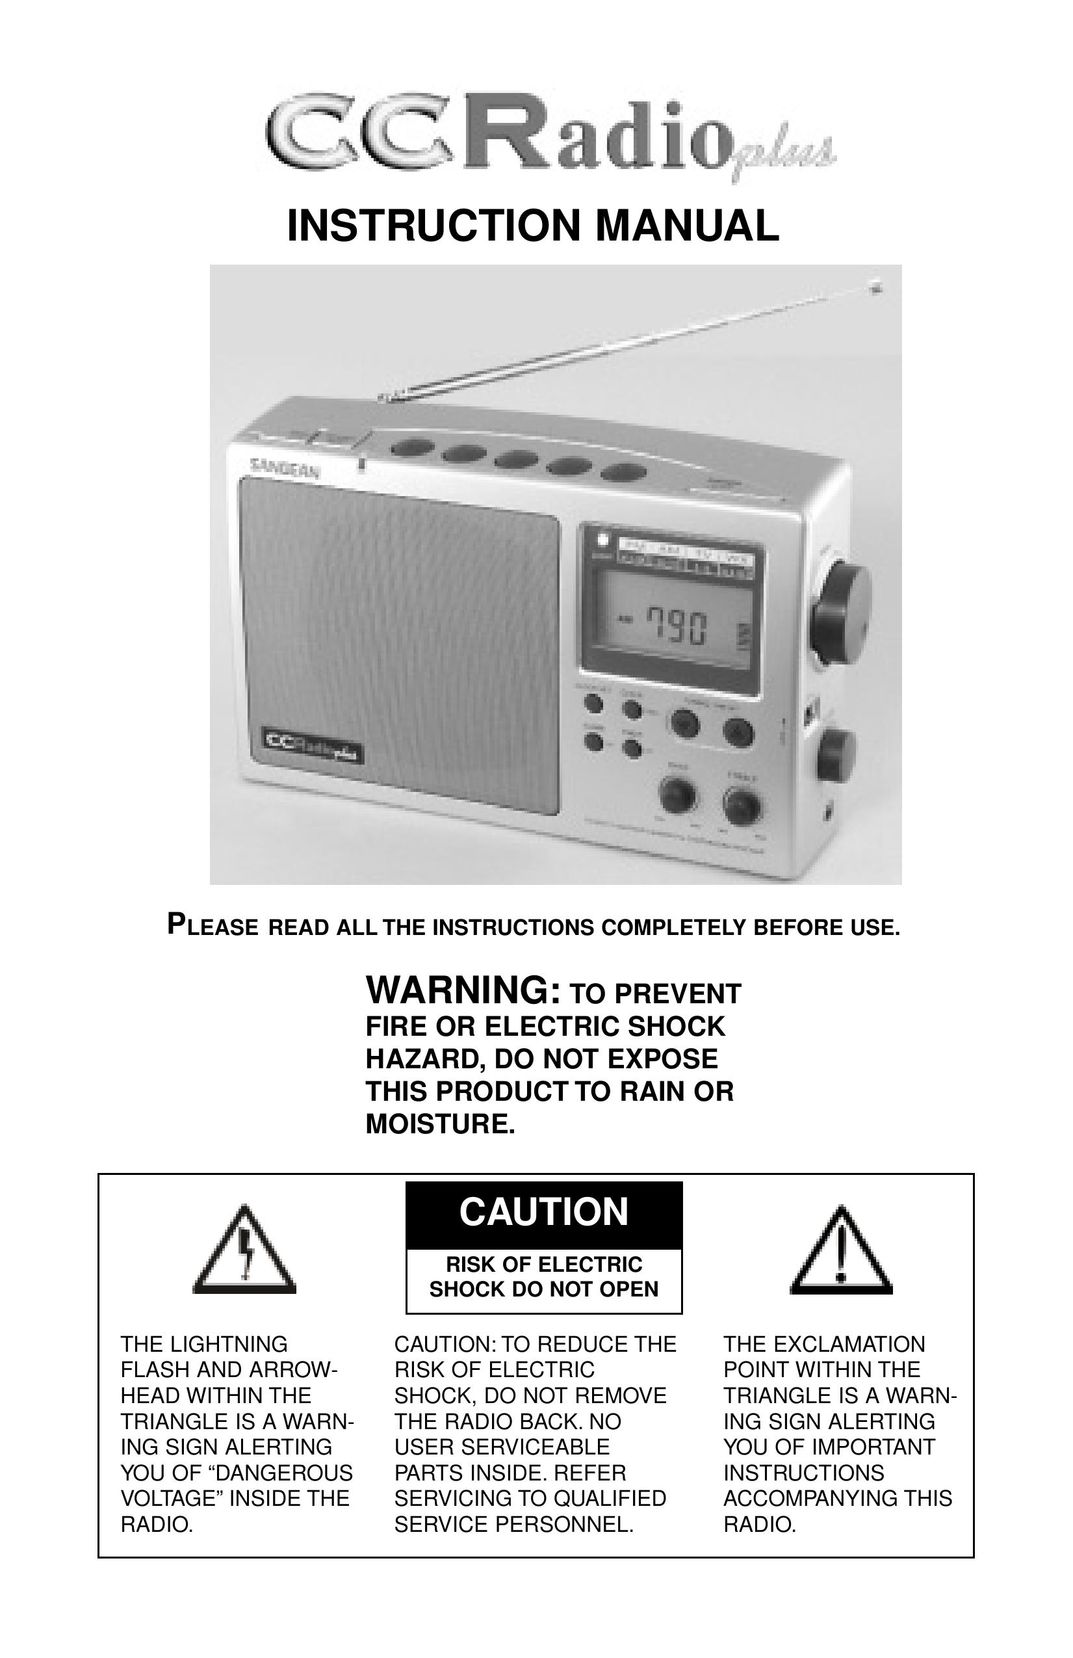 C. Crane CCRadio plus Portable Radio User Manual